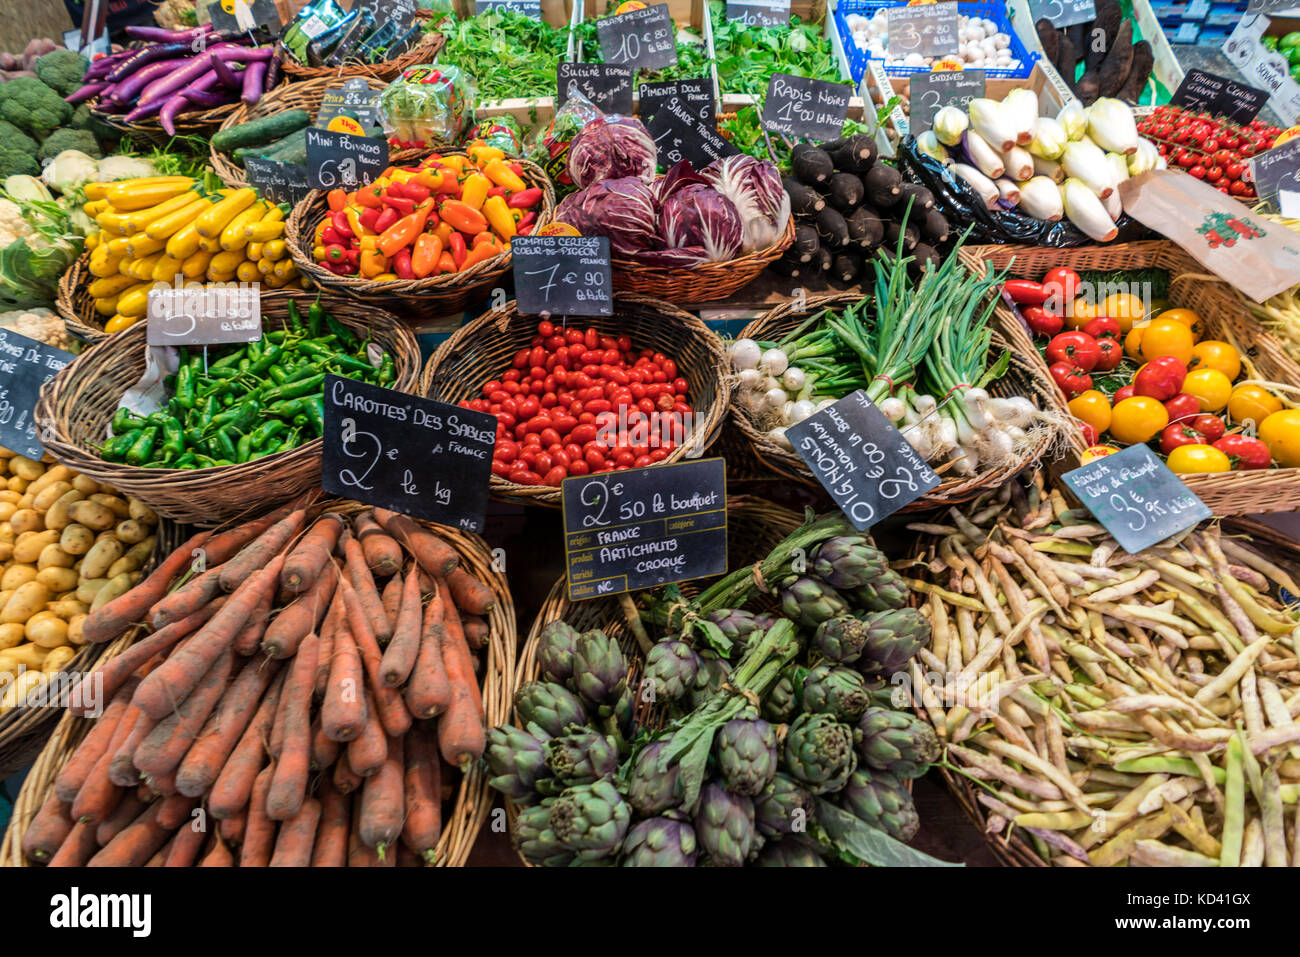 vegetables, Marche de Capucins, Bordeaux, France Stock Photo